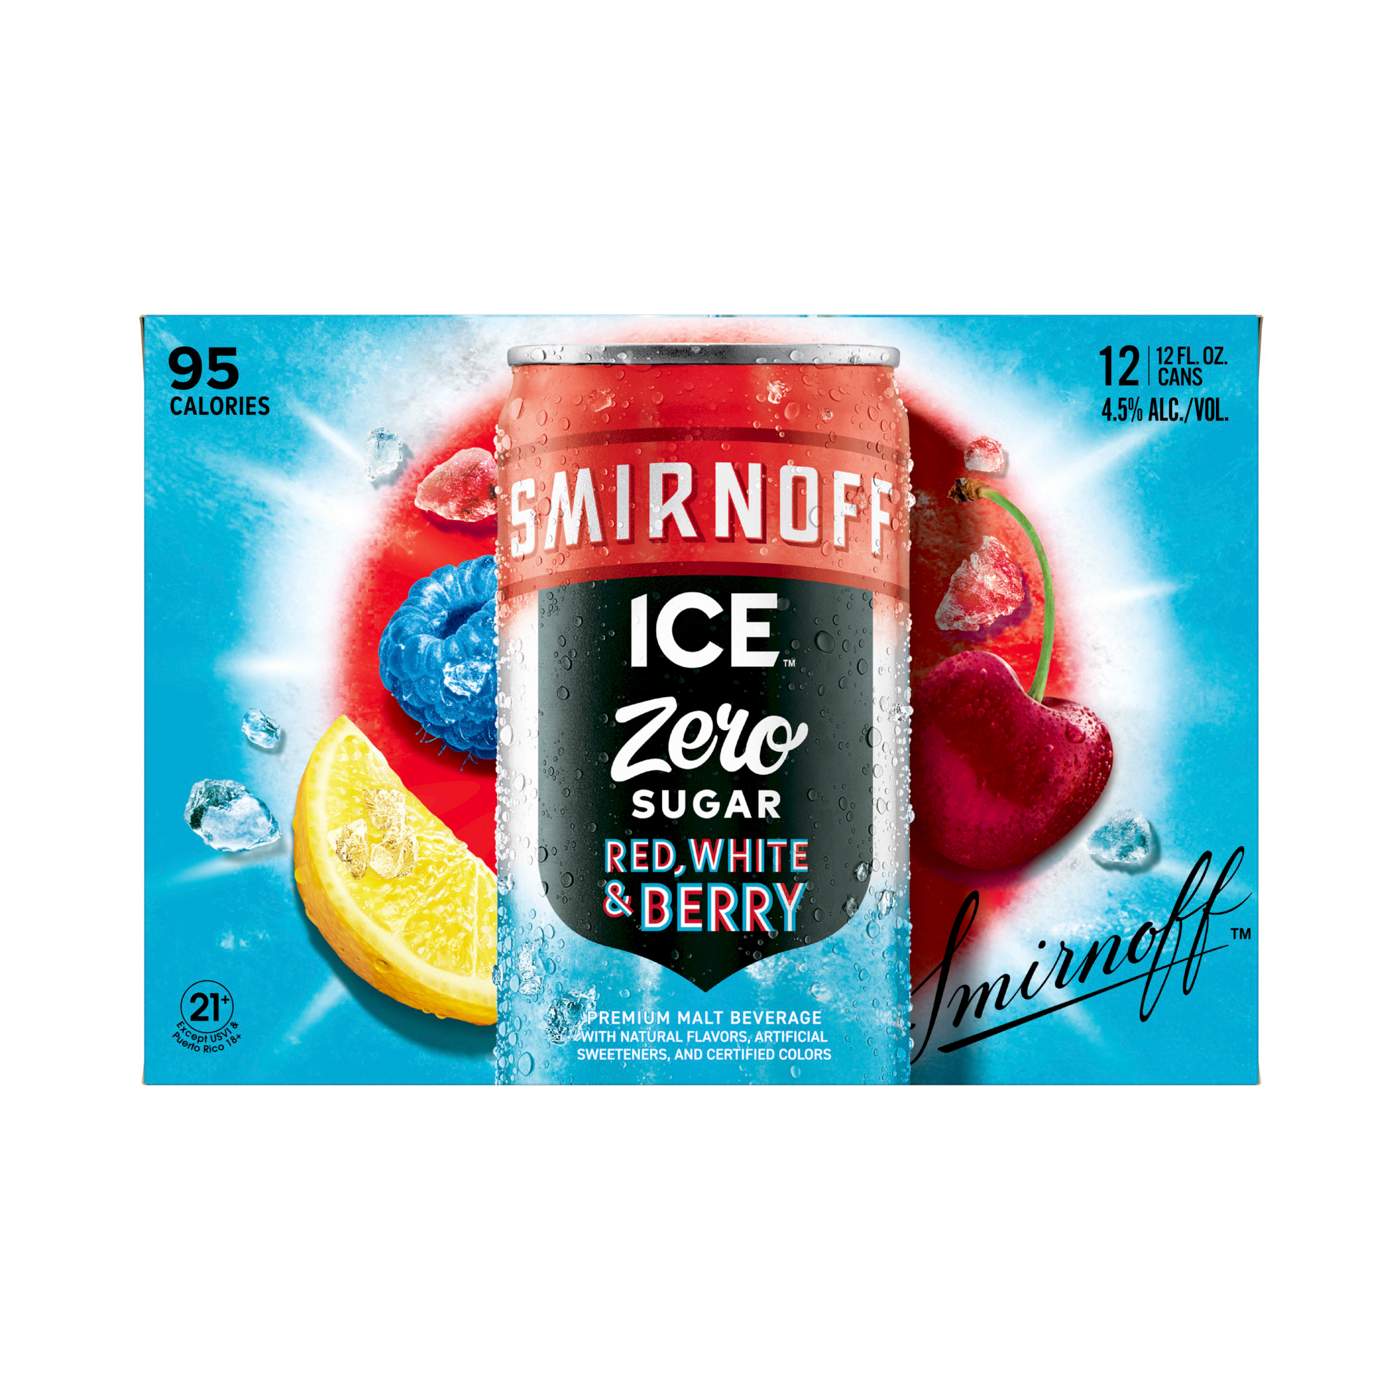 Smirnoff Ice Zero Sugar Red, White, Berry; image 1 of 4